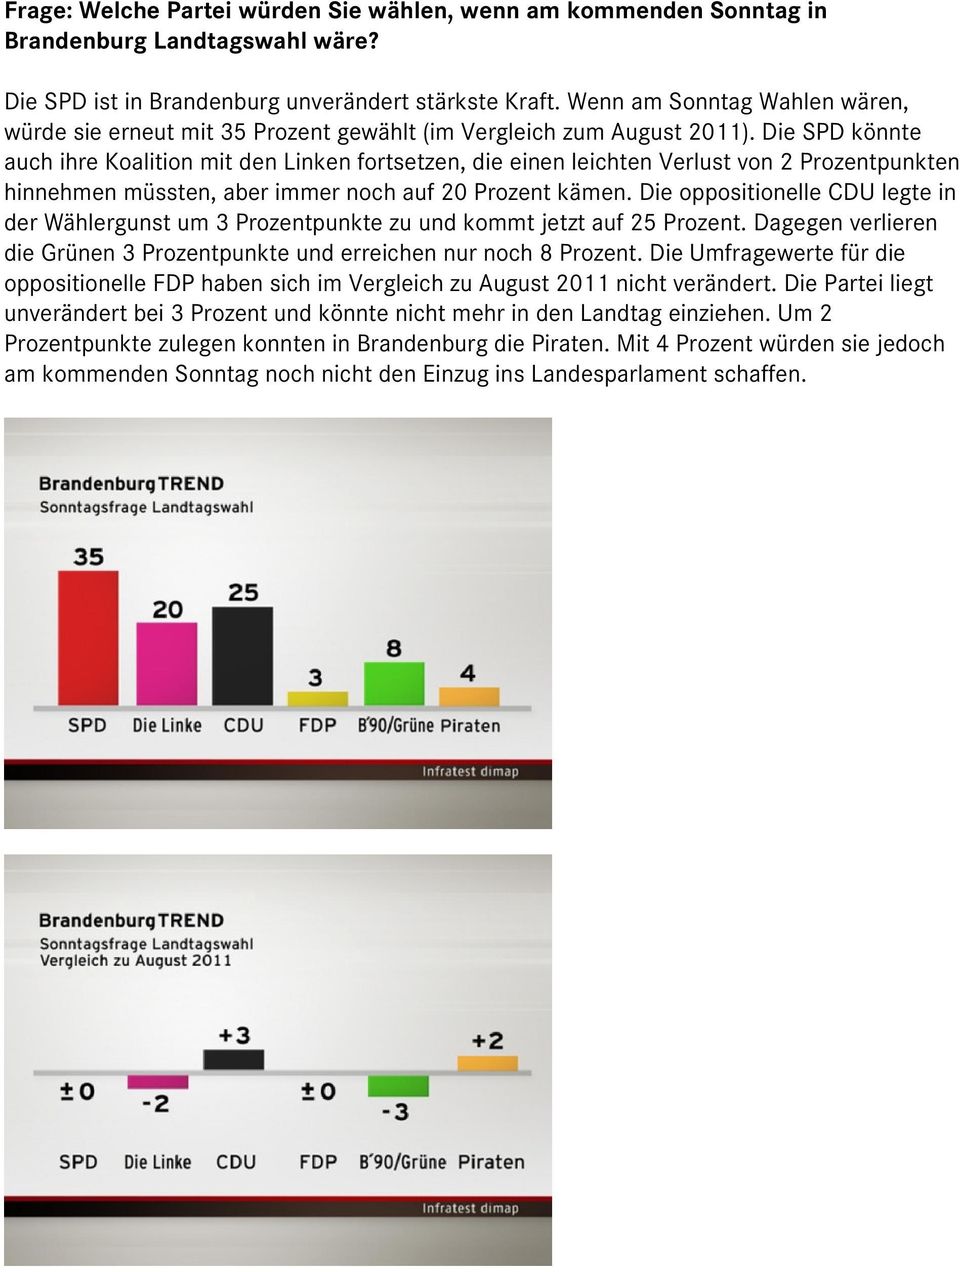 Die SPD könnte auch ihre Koalition mit den Linken fortsetzen, die einen leichten Verlust von 2 Prozentpunkten hinnehmen müssten, aber immer noch auf 20 Prozent kämen.